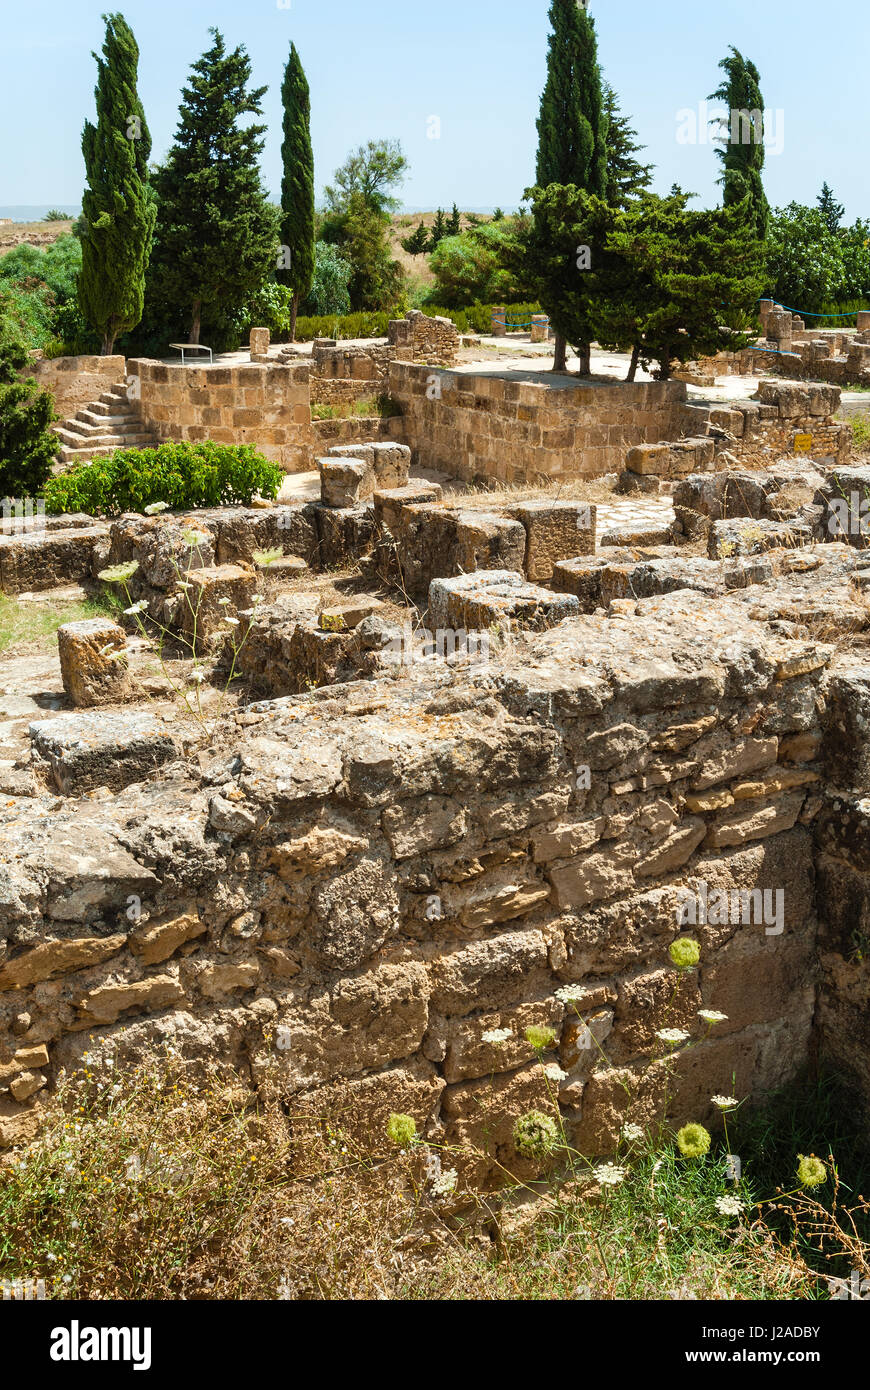 Utica, punischen und römischen archäologischen Stätte, Tunesien, Nordafrika Stockfoto